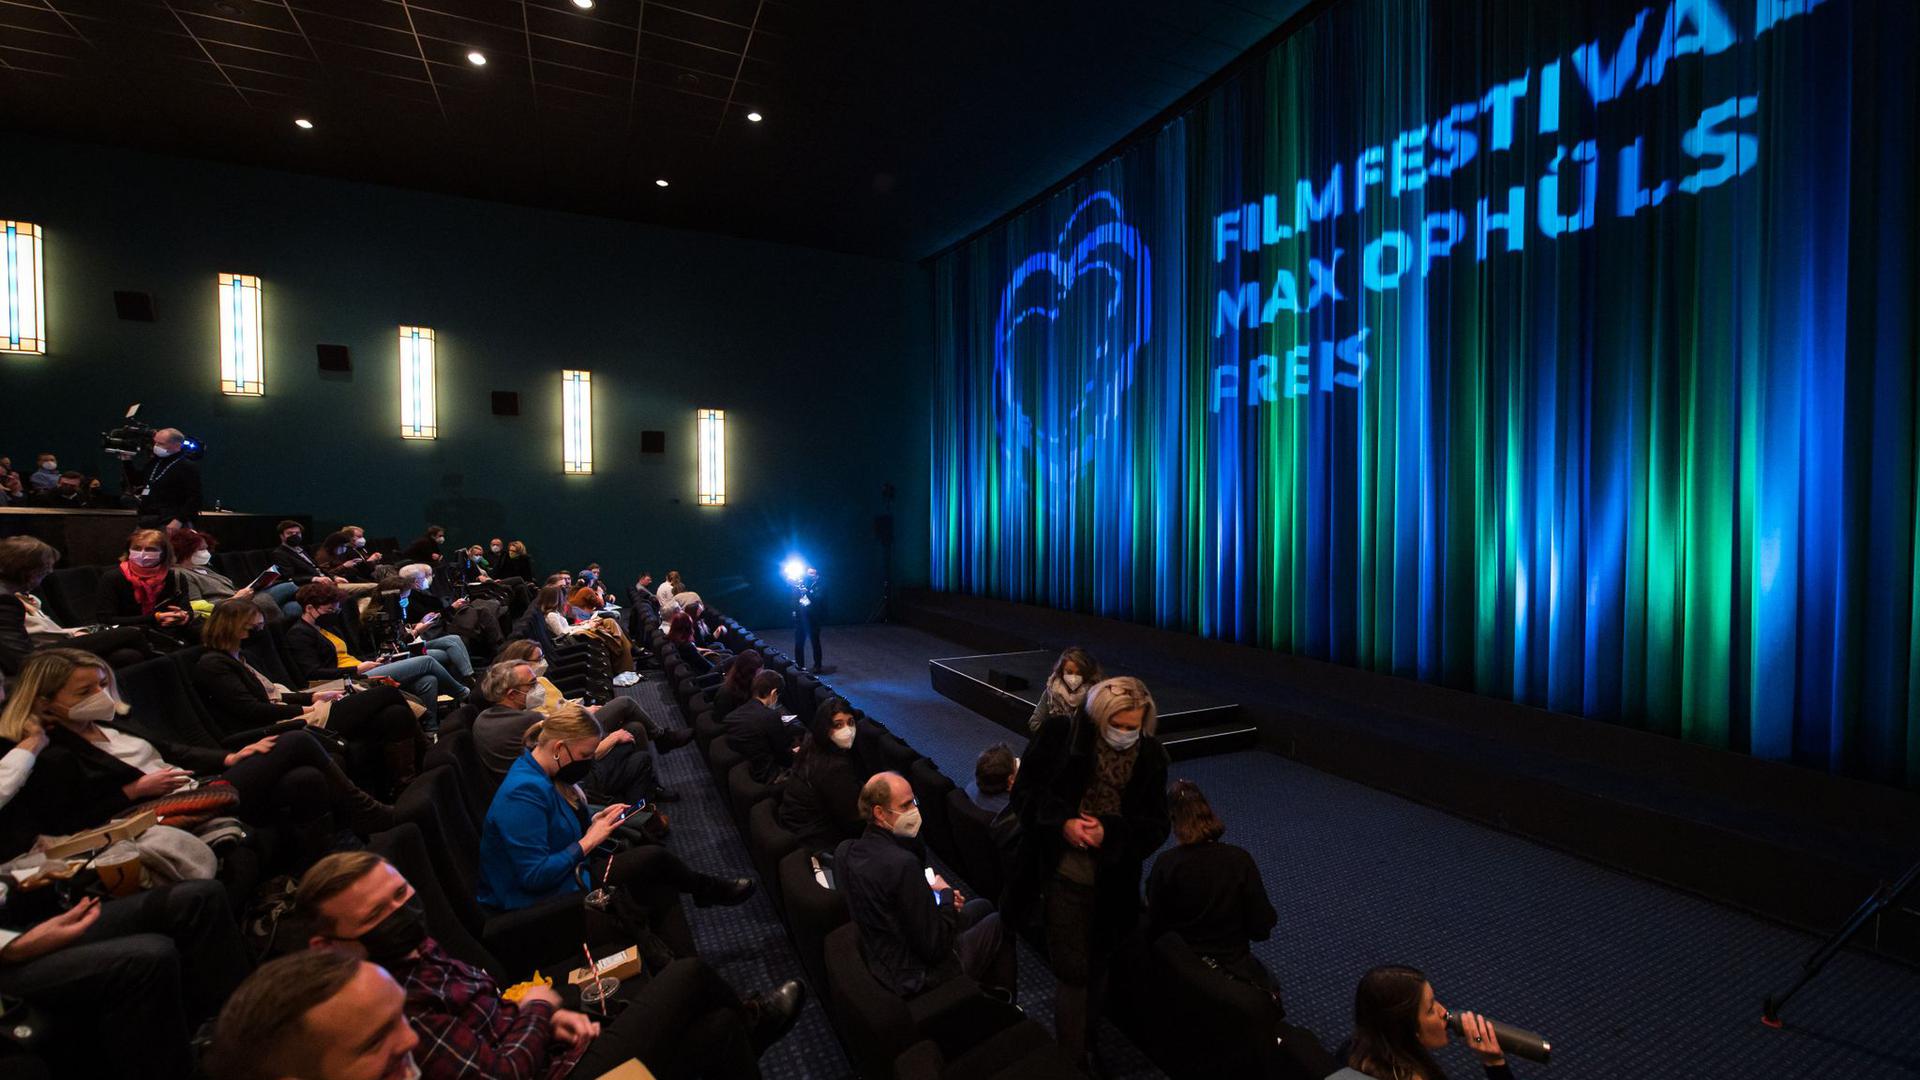 Das Filmfestival Max Ophüls Preis gilt als wichtiges Festival für den deutschsprachigen Filmnachwuchs.